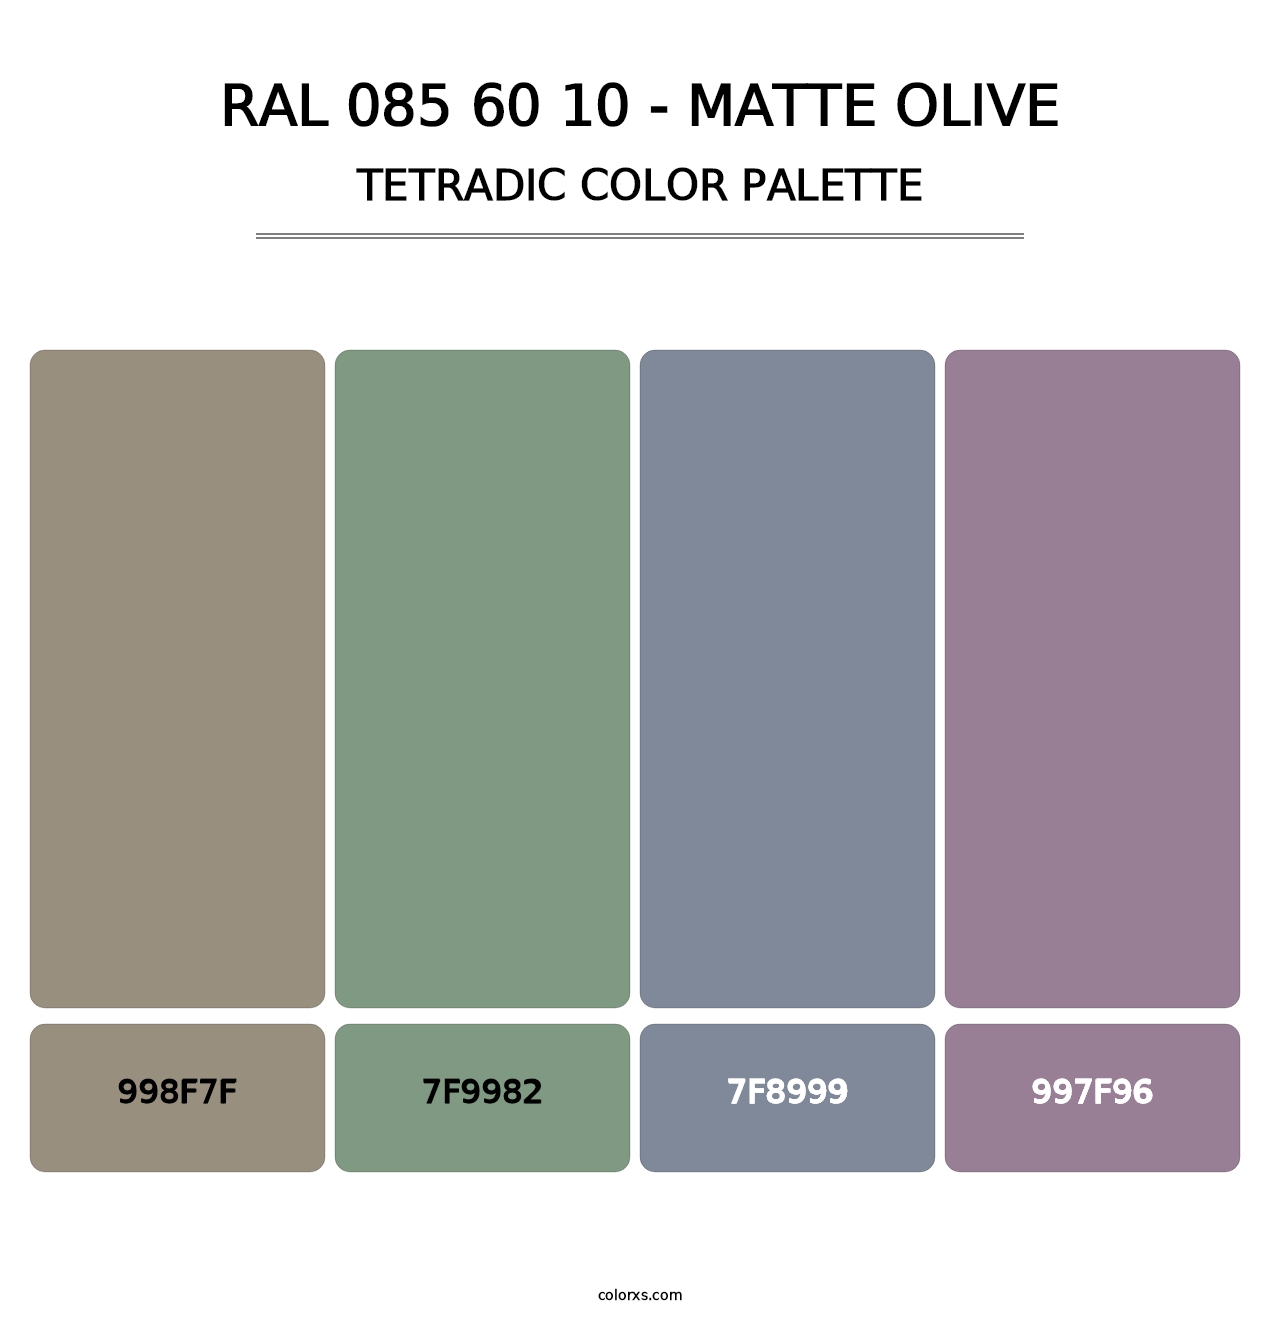 RAL 085 60 10 - Matte Olive - Tetradic Color Palette